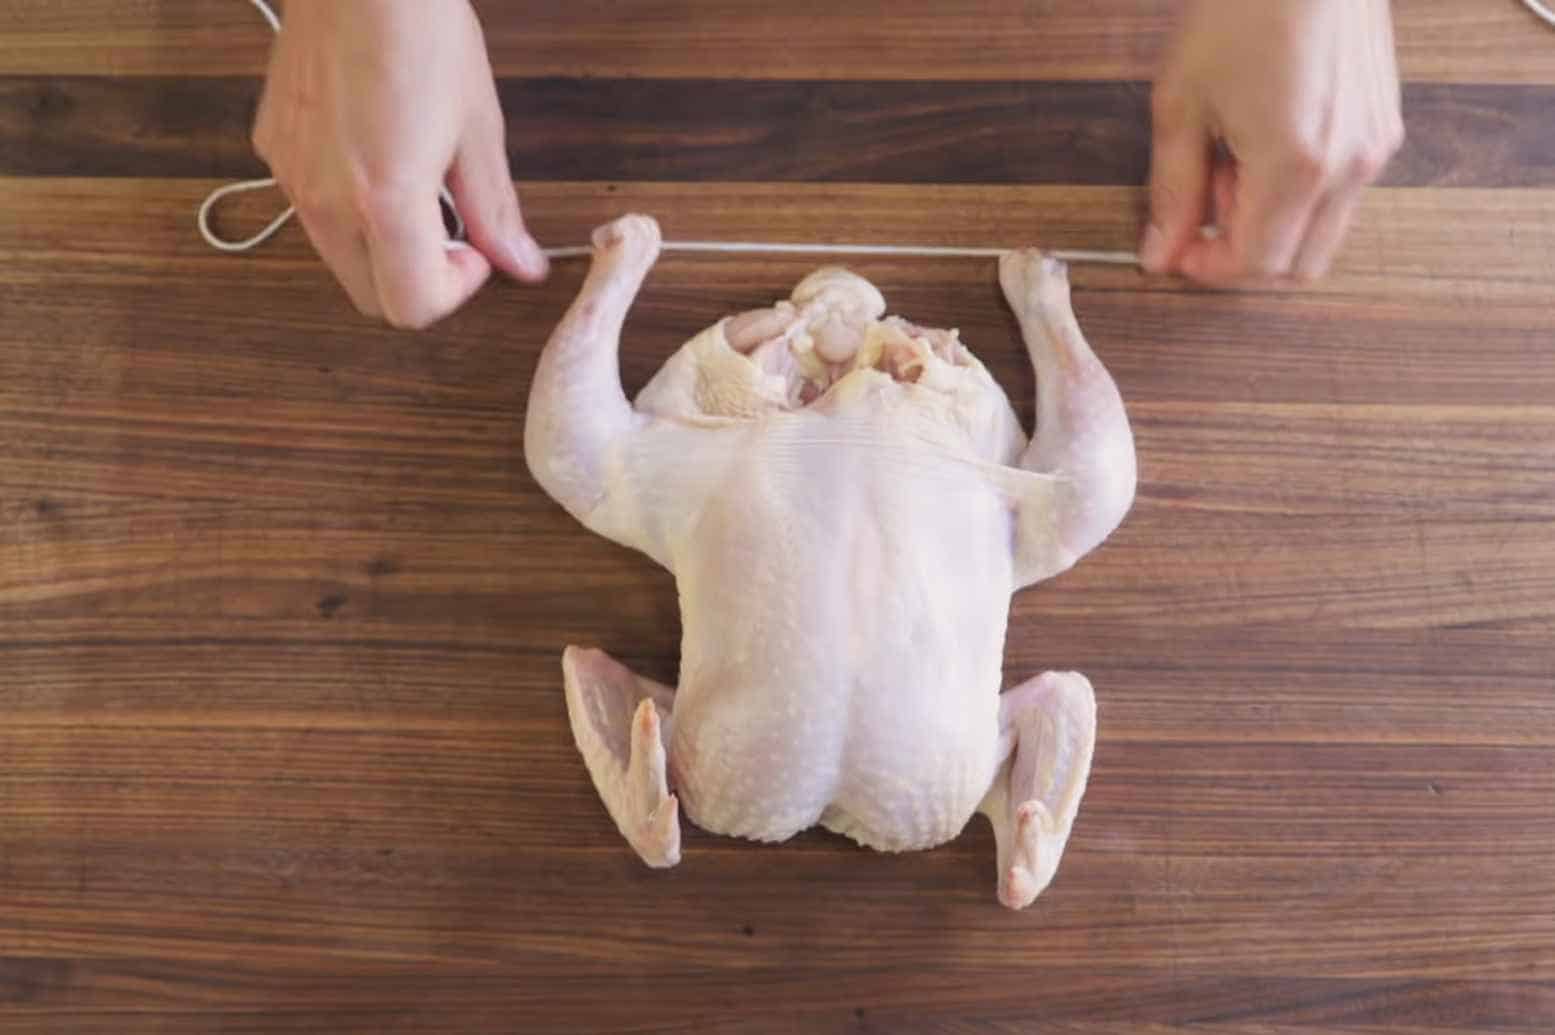 Prepare the Chicken